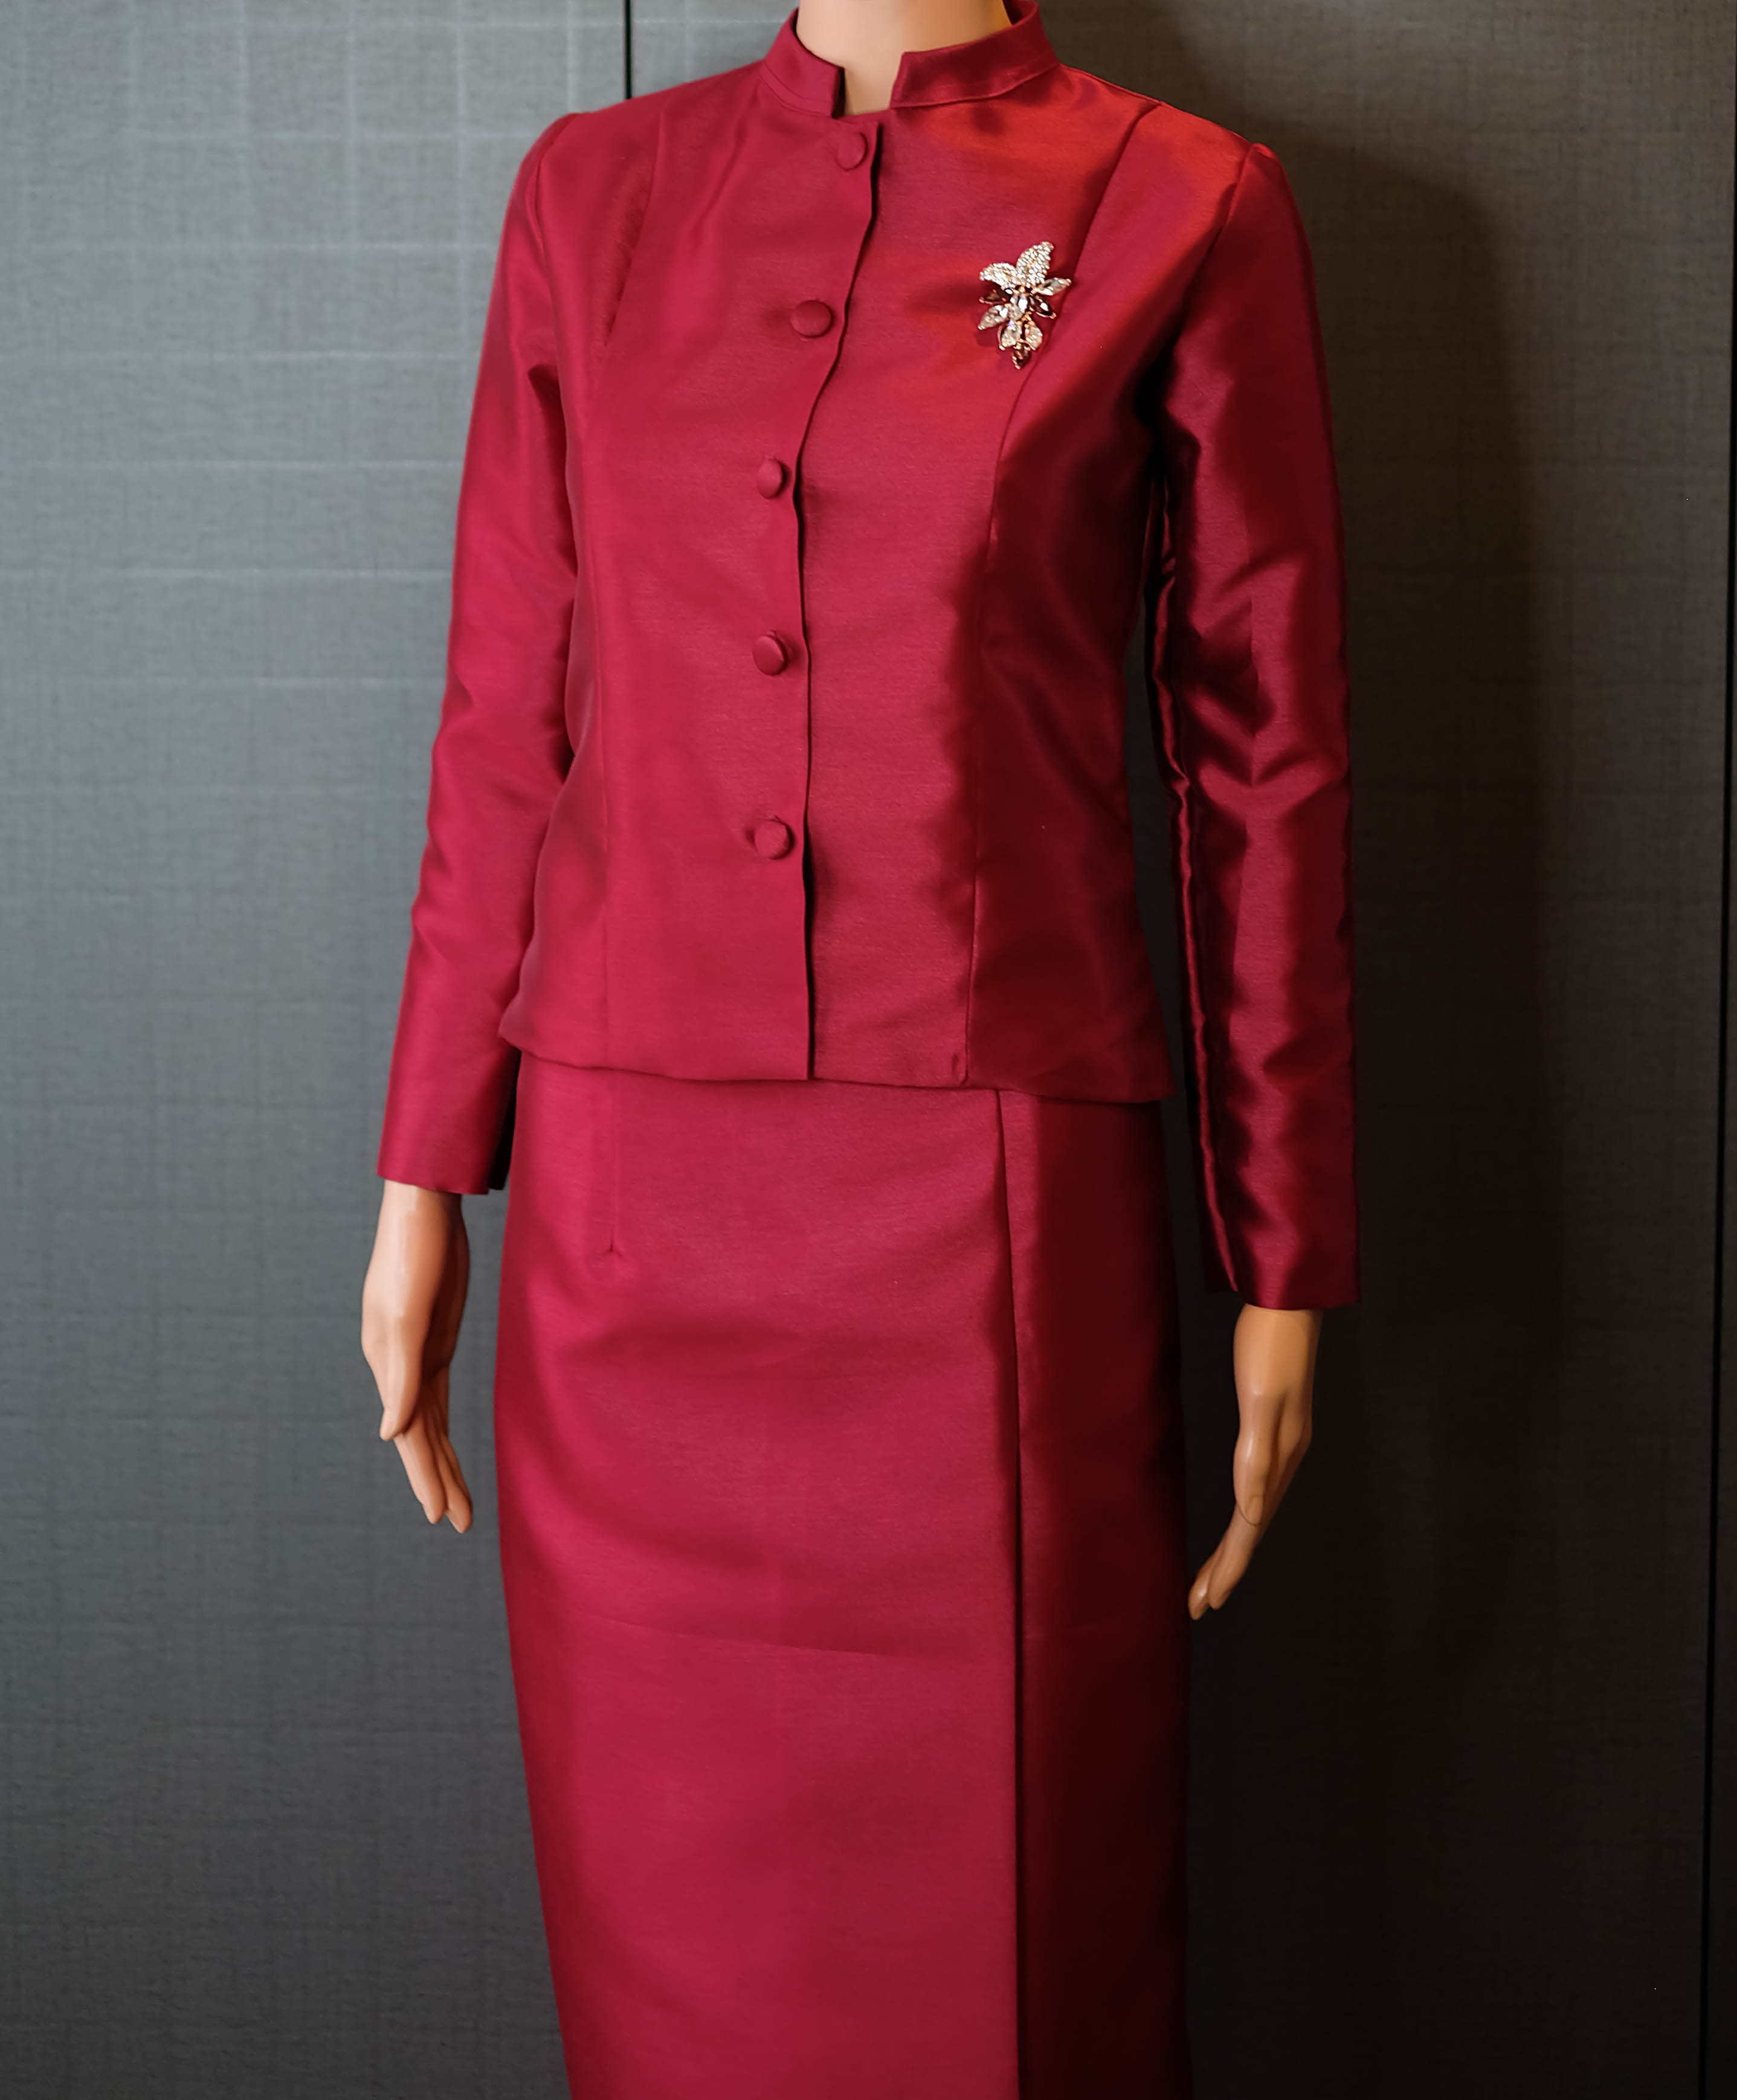 ชุดไทยบรมพิมาน มี 8 สี ผ้าไหมอิตาลีสุดหรู (ดำ ขาว แดง ม่วง ชมพู เหลือง ฟ้า โอโม่) ได้ทั้งเสื้อและผ้าถุง ใส่ซับในอย่างดีทั้งตัว